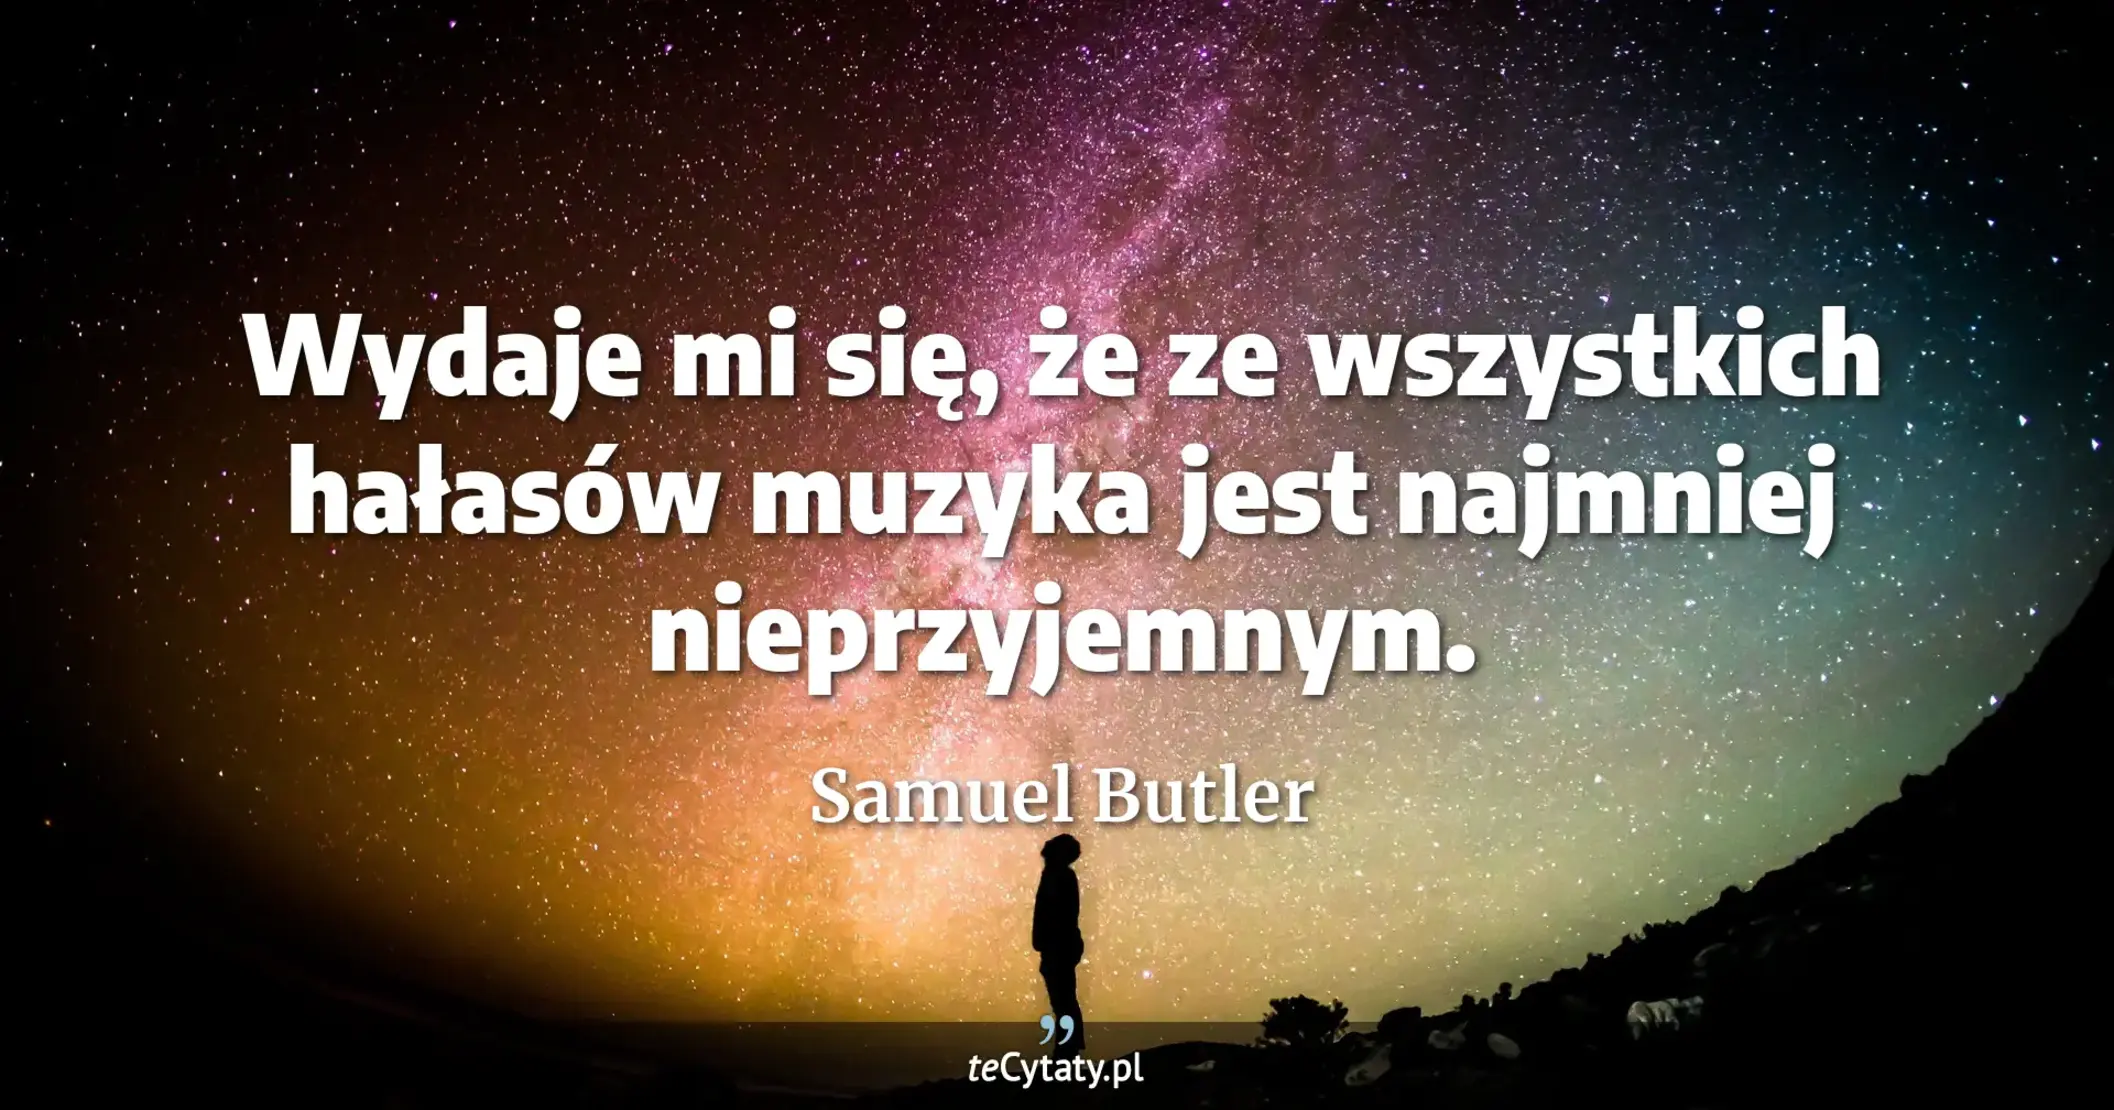 Wydaje mi się, że ze wszystkich hałasów muzyka jest najmniej nieprzyjemnym. - Samuel Butler